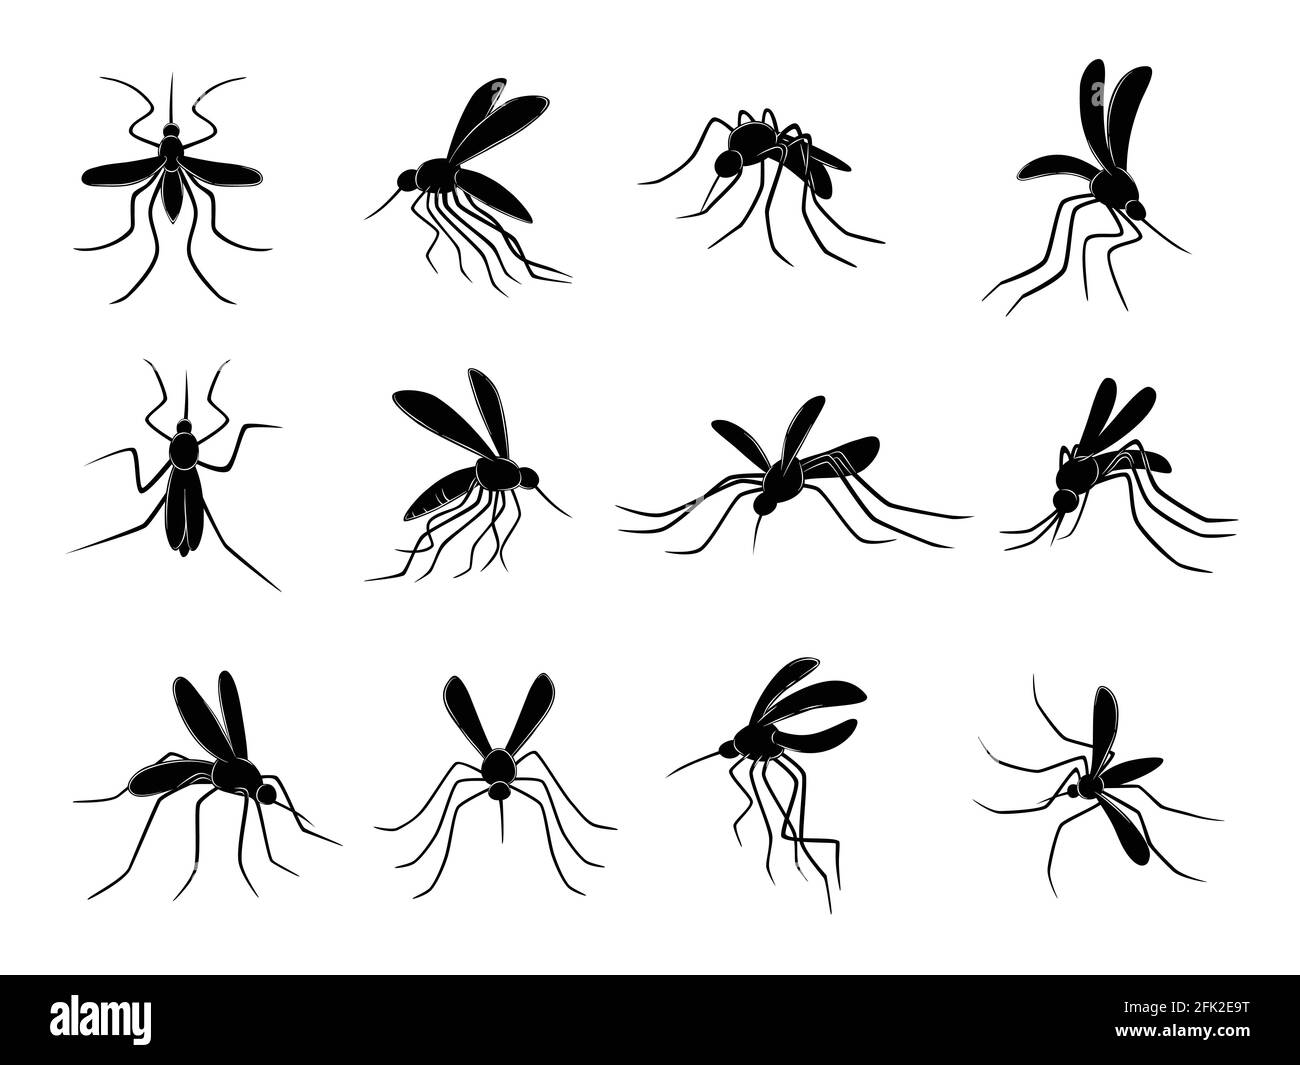 Moskito. Fliegende Insekten Träger von Viren Blutsauger Vektor gezeichnet Moskitos Stock Vektor